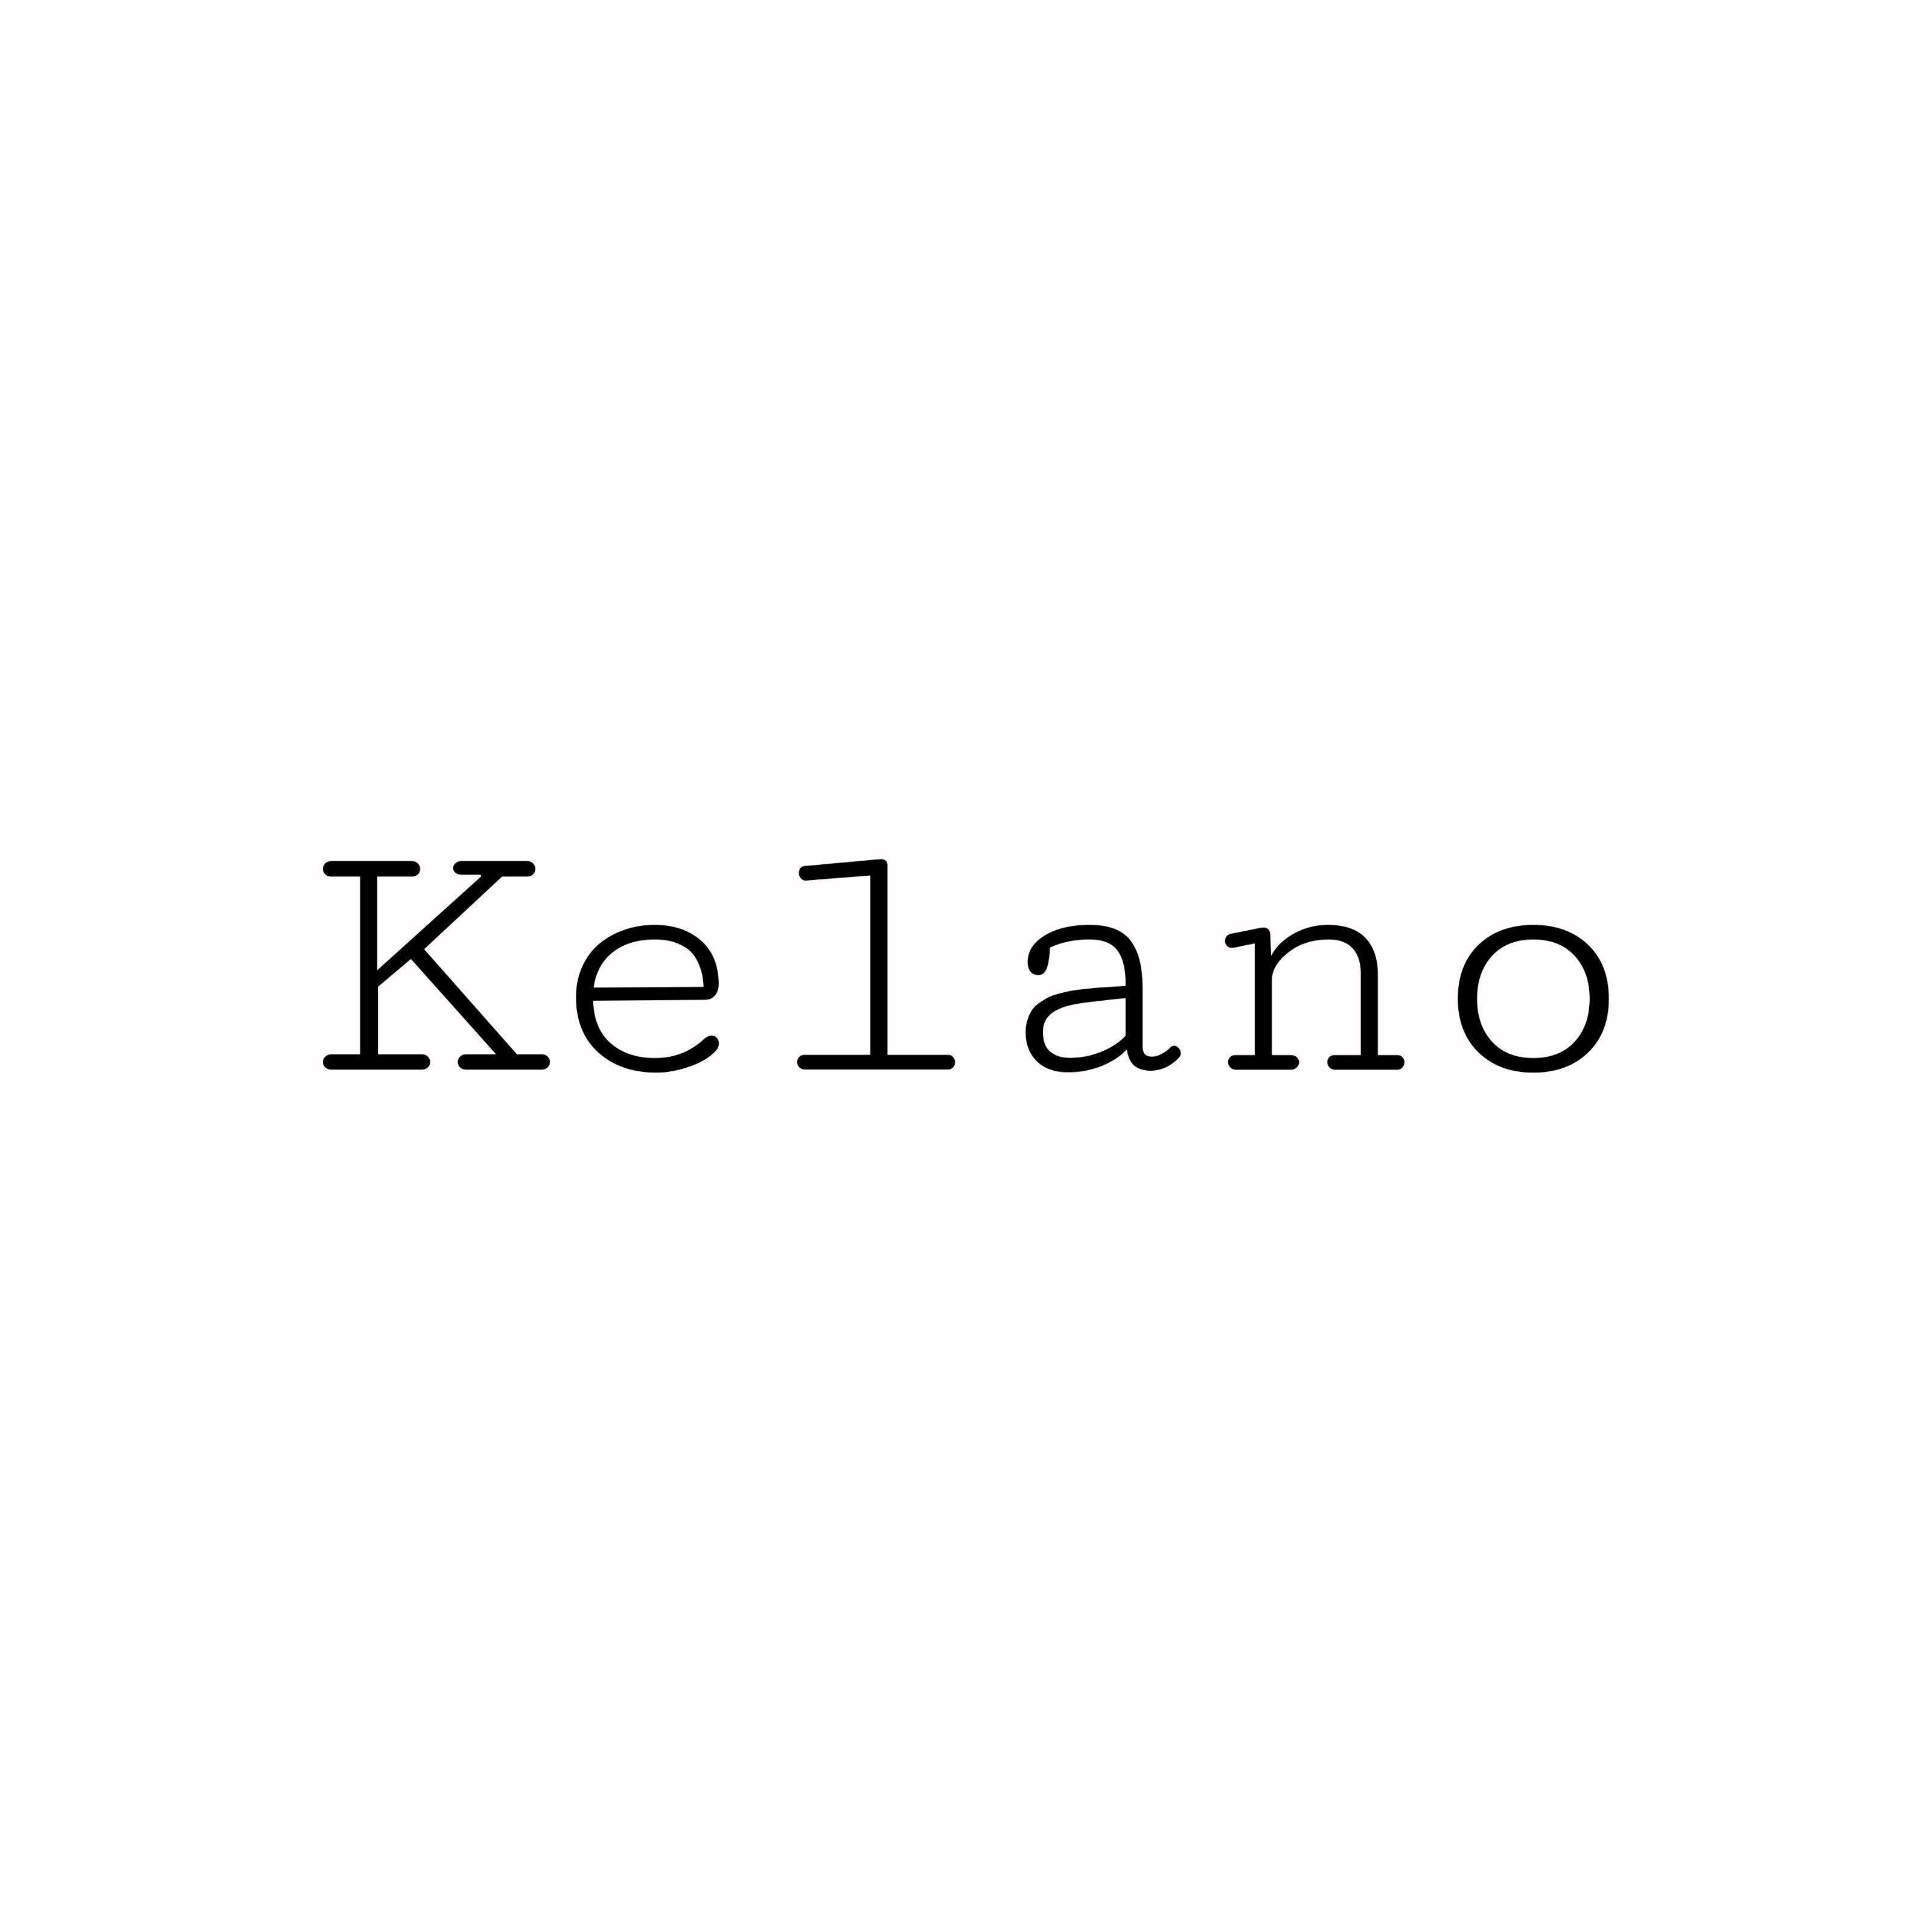 Kelano – kelano